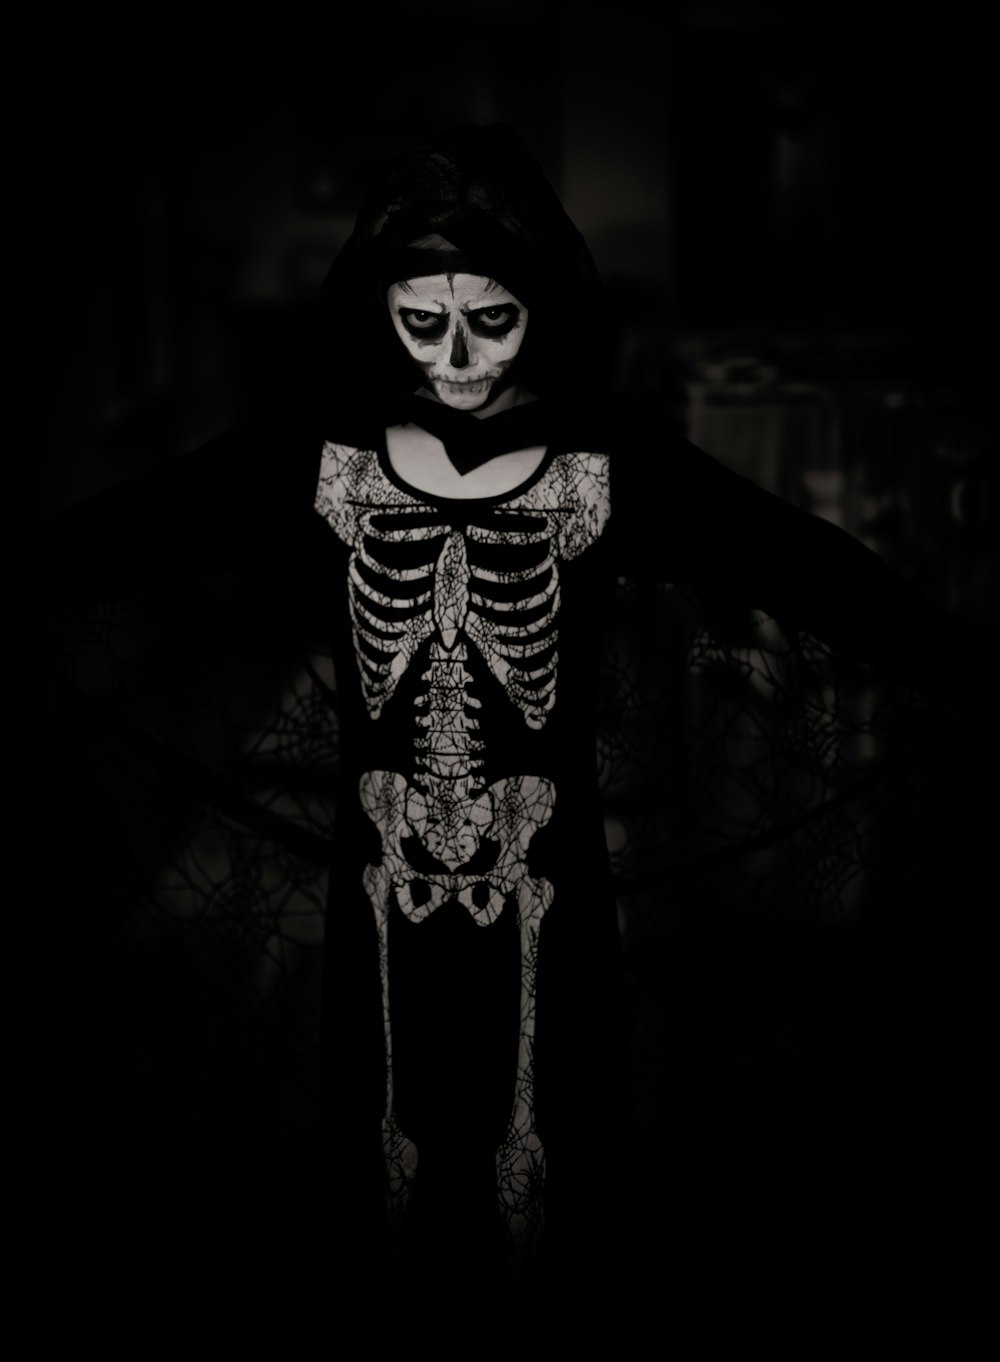 pessoa vestindo traje de esqueleto